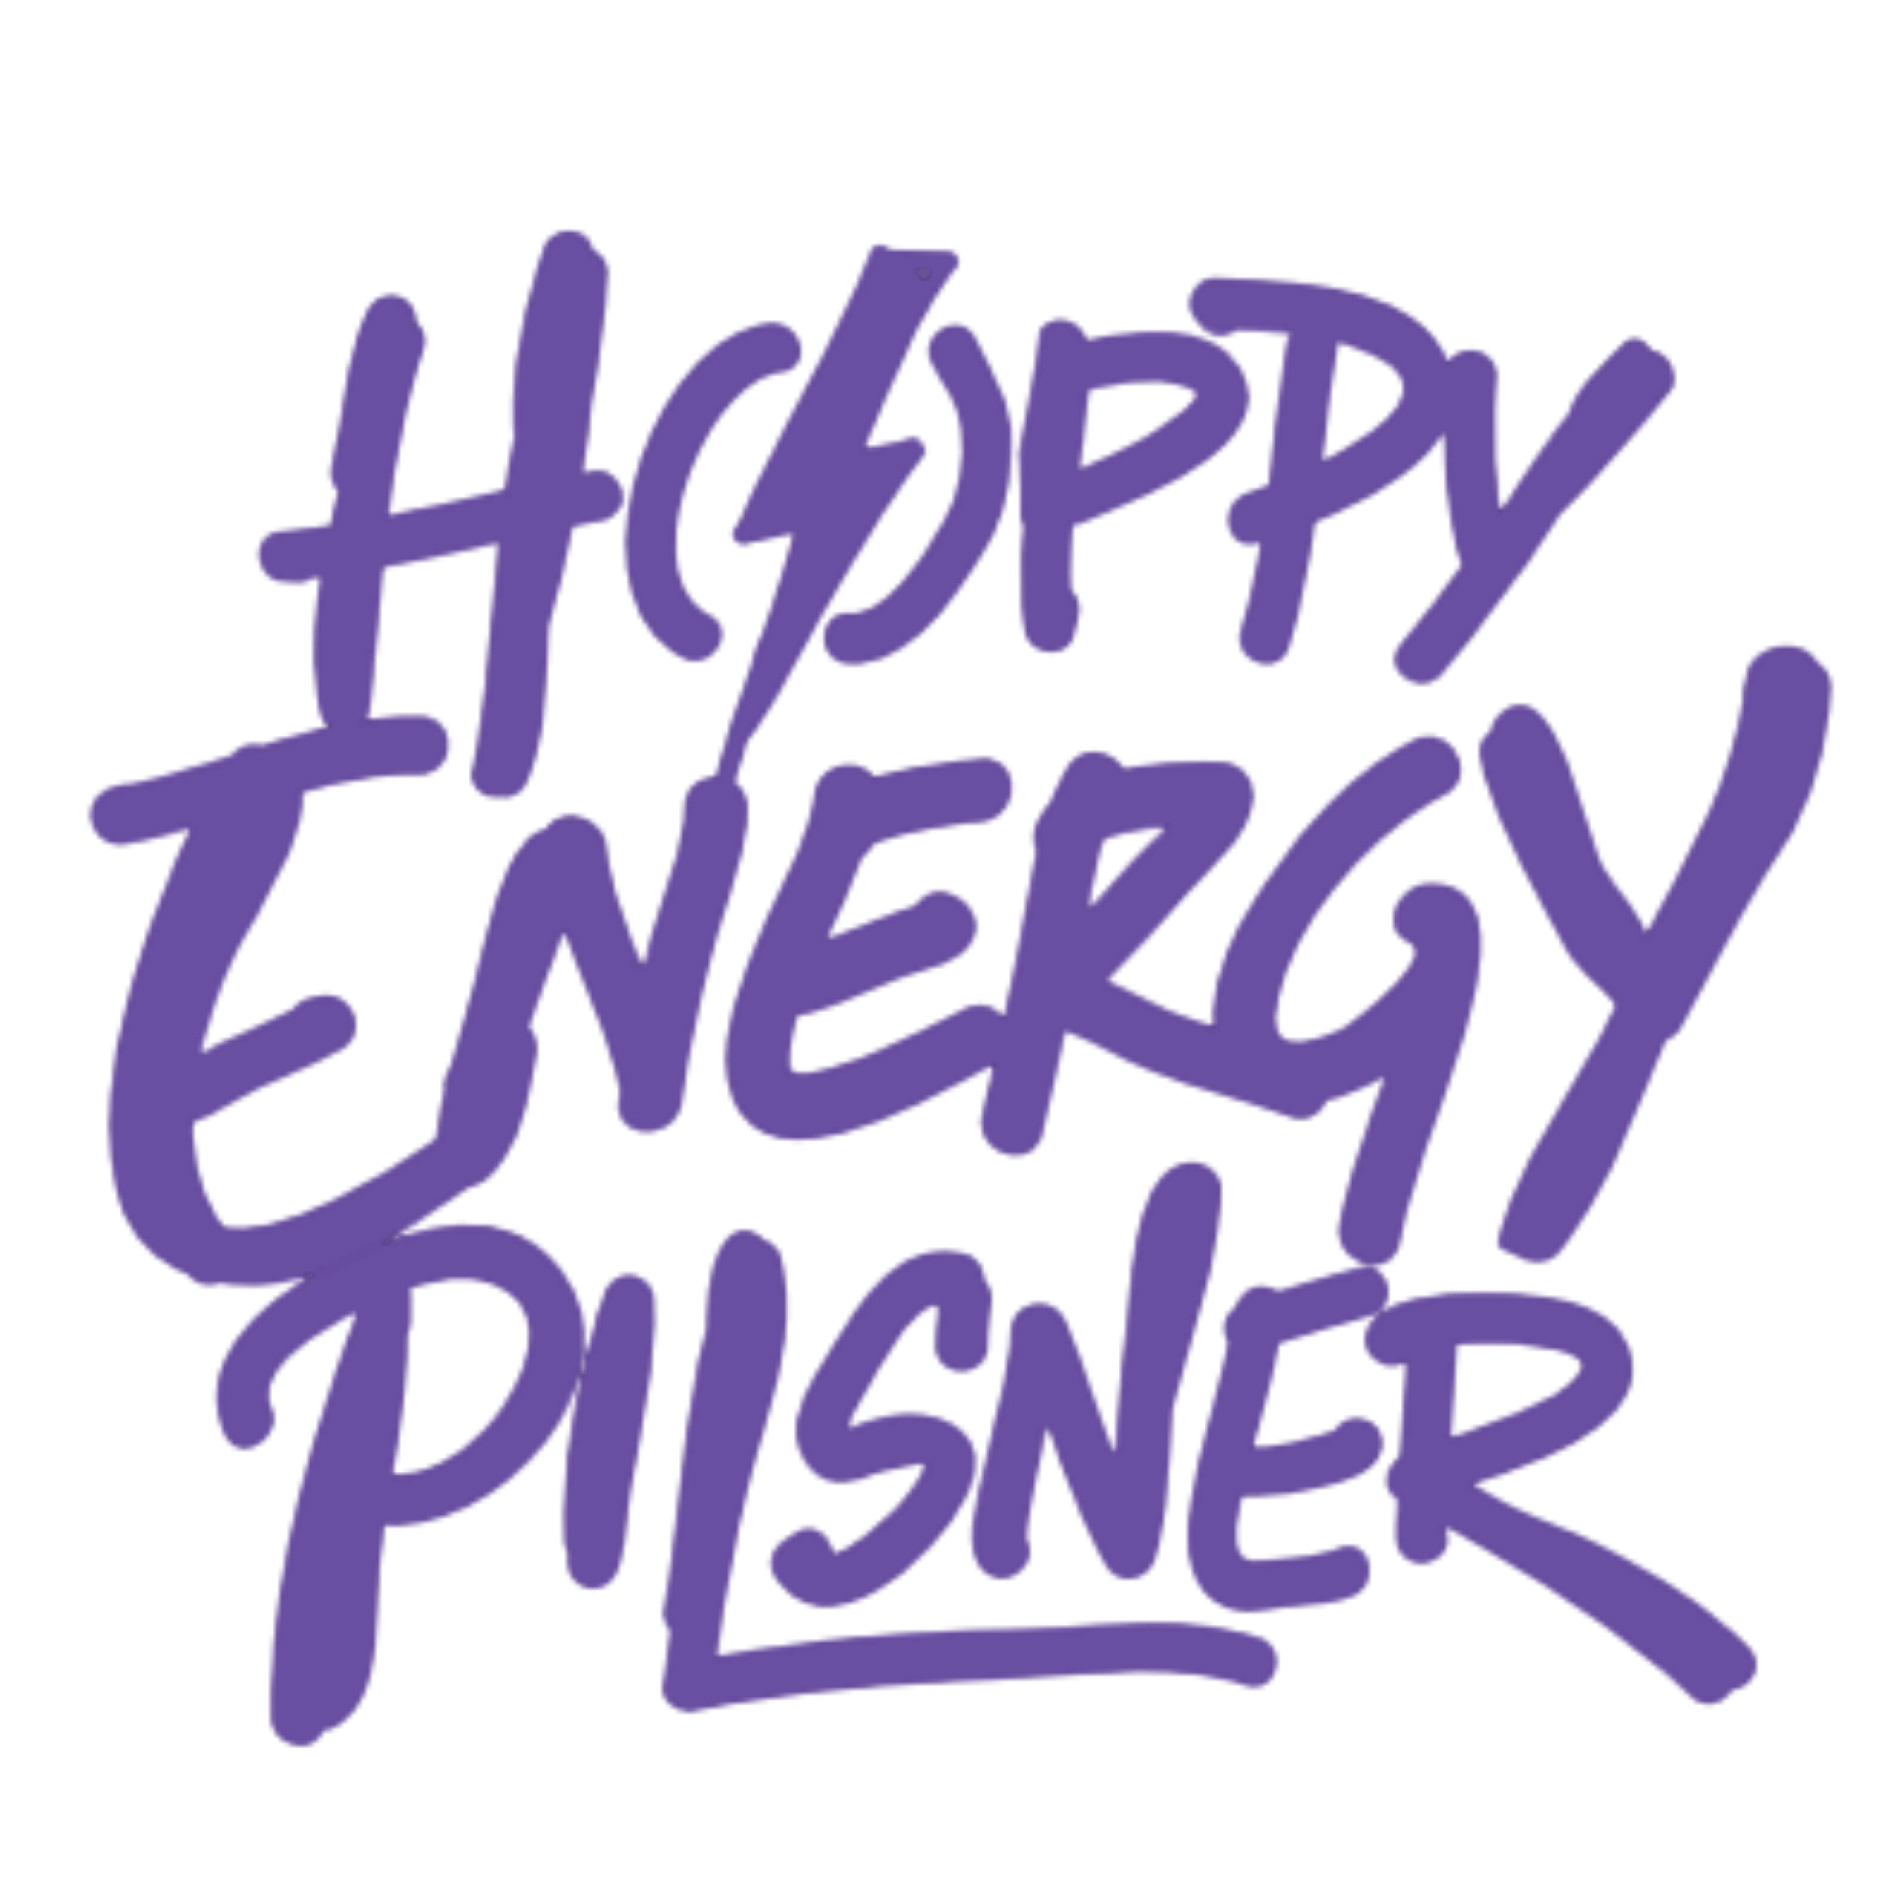 Hop For fun - Hoppy Energy Pilsner